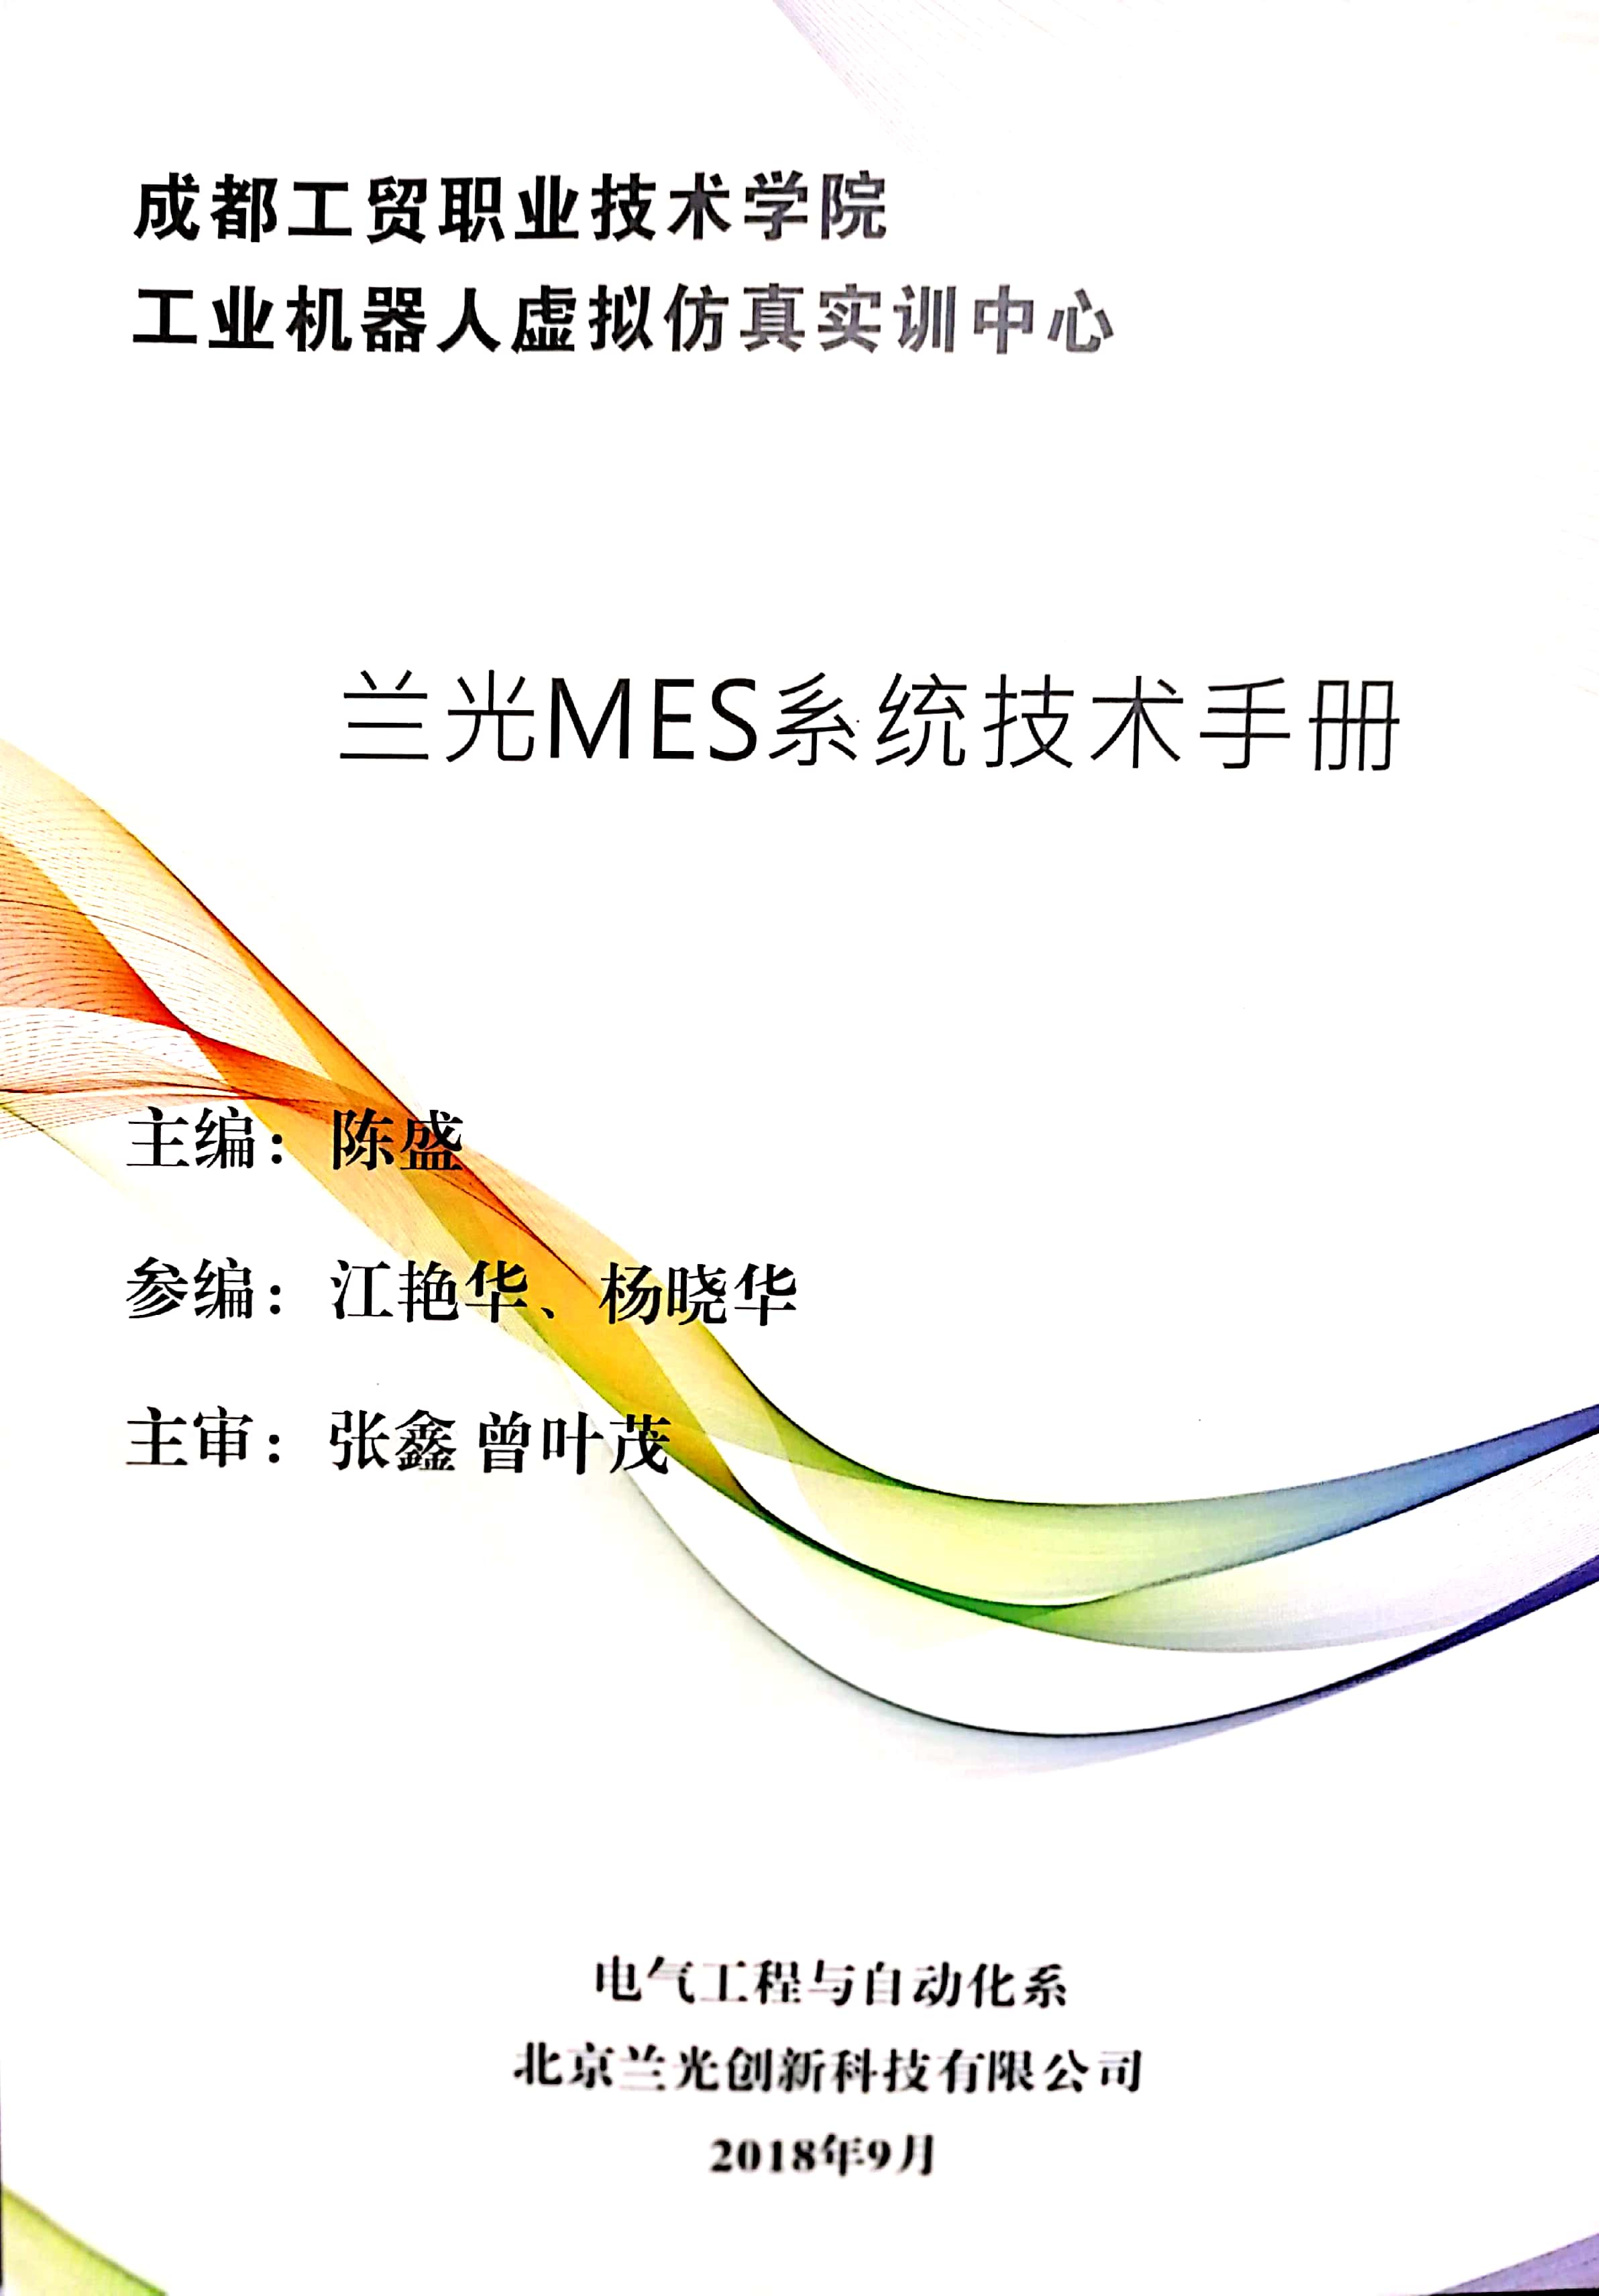 兰光MES系统技术手册.jpg